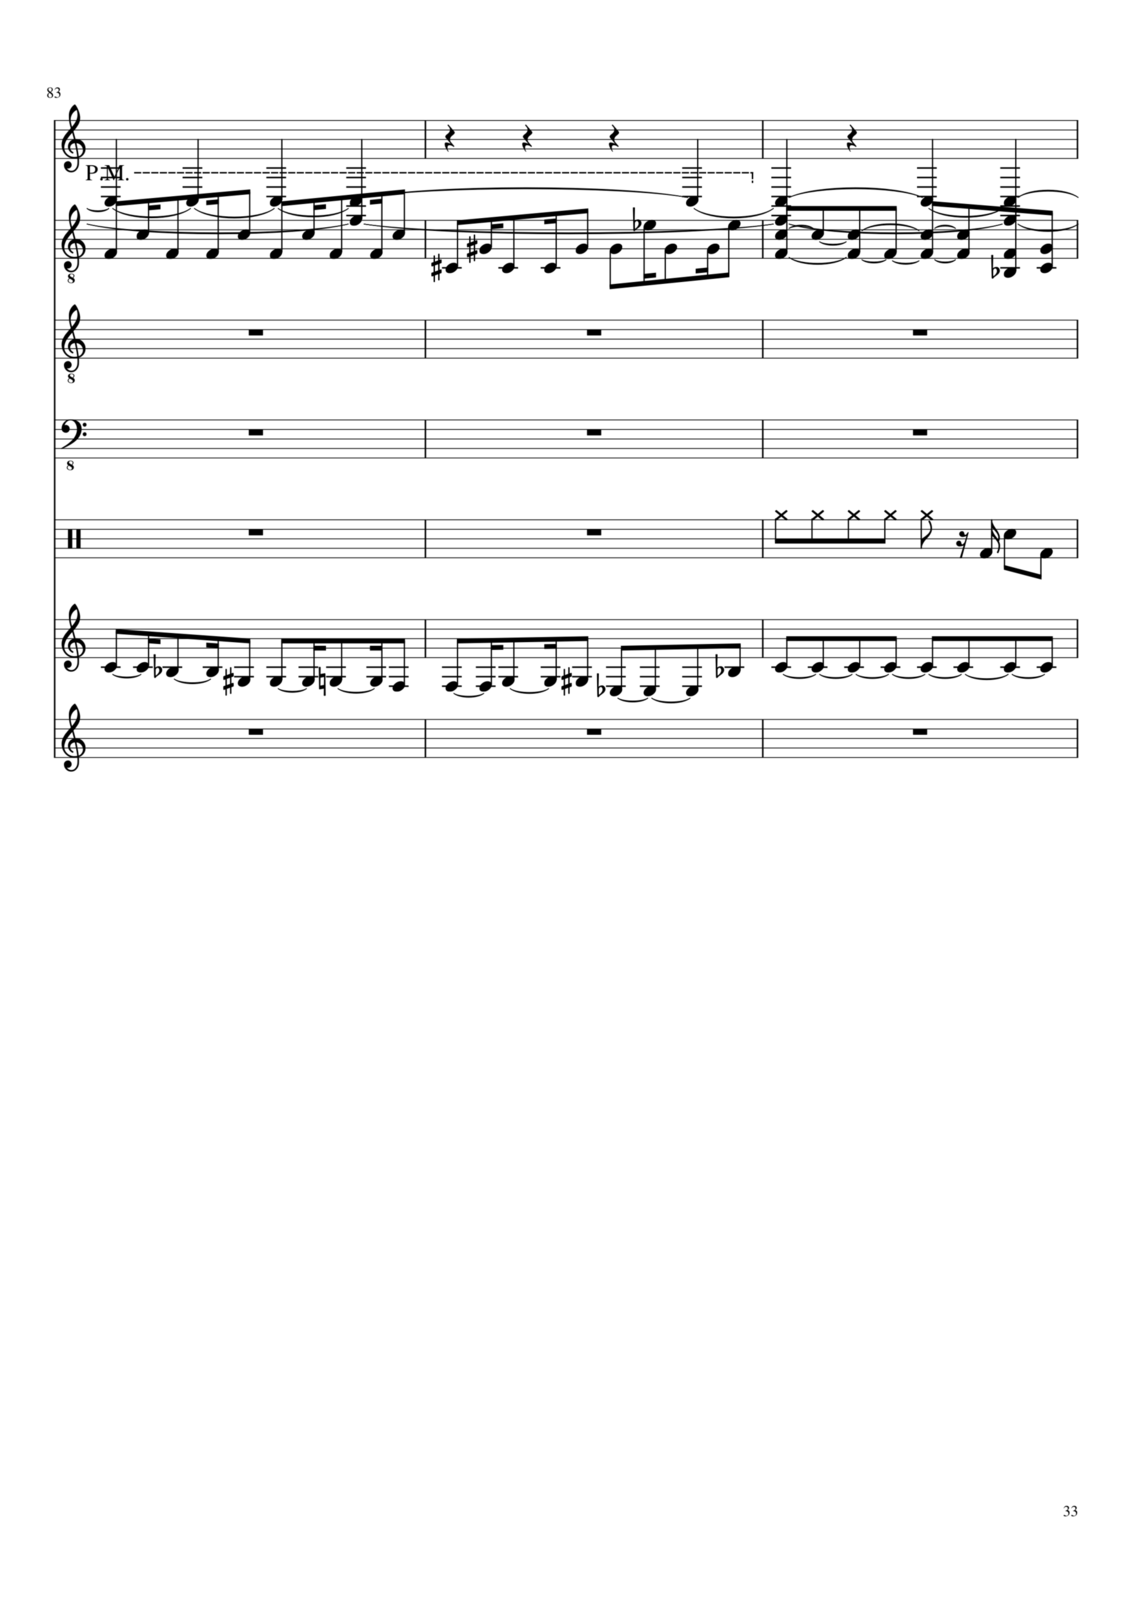 Vetryi i Tumanyi slide, Image 8